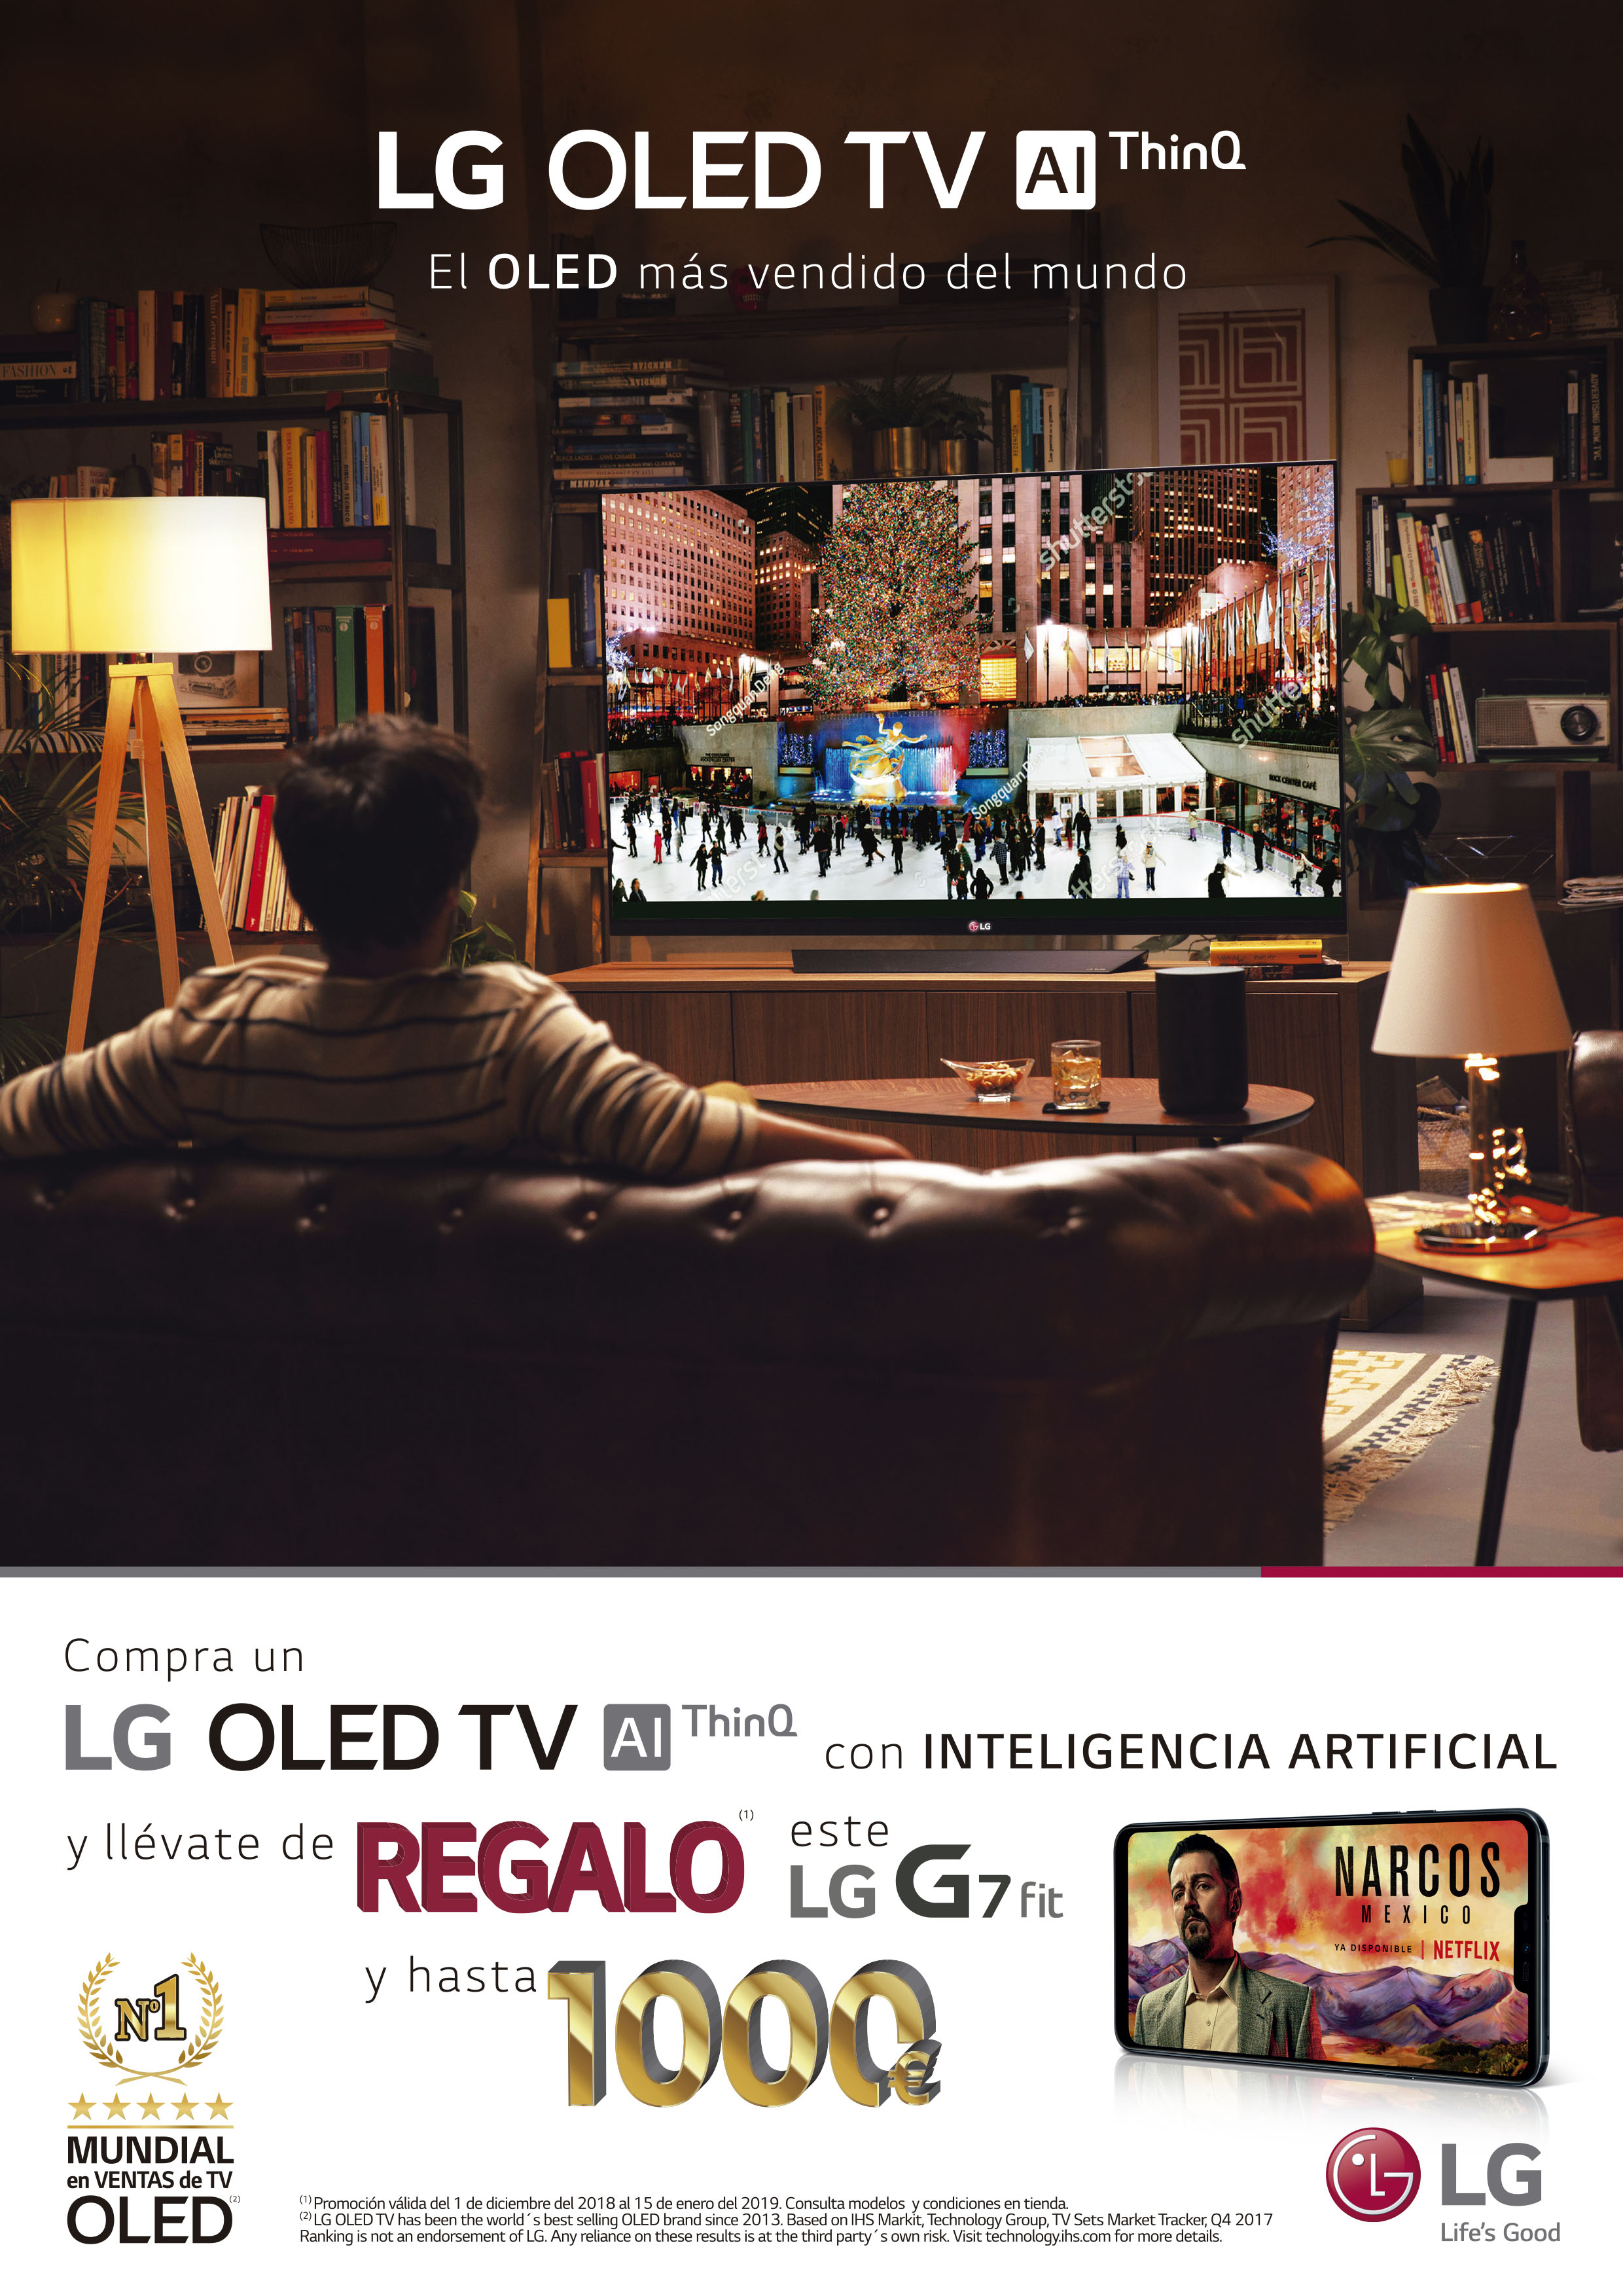 Compra un LG OLED TV y llévate de regalo un LG G7 FIT y hasta 1000 euros